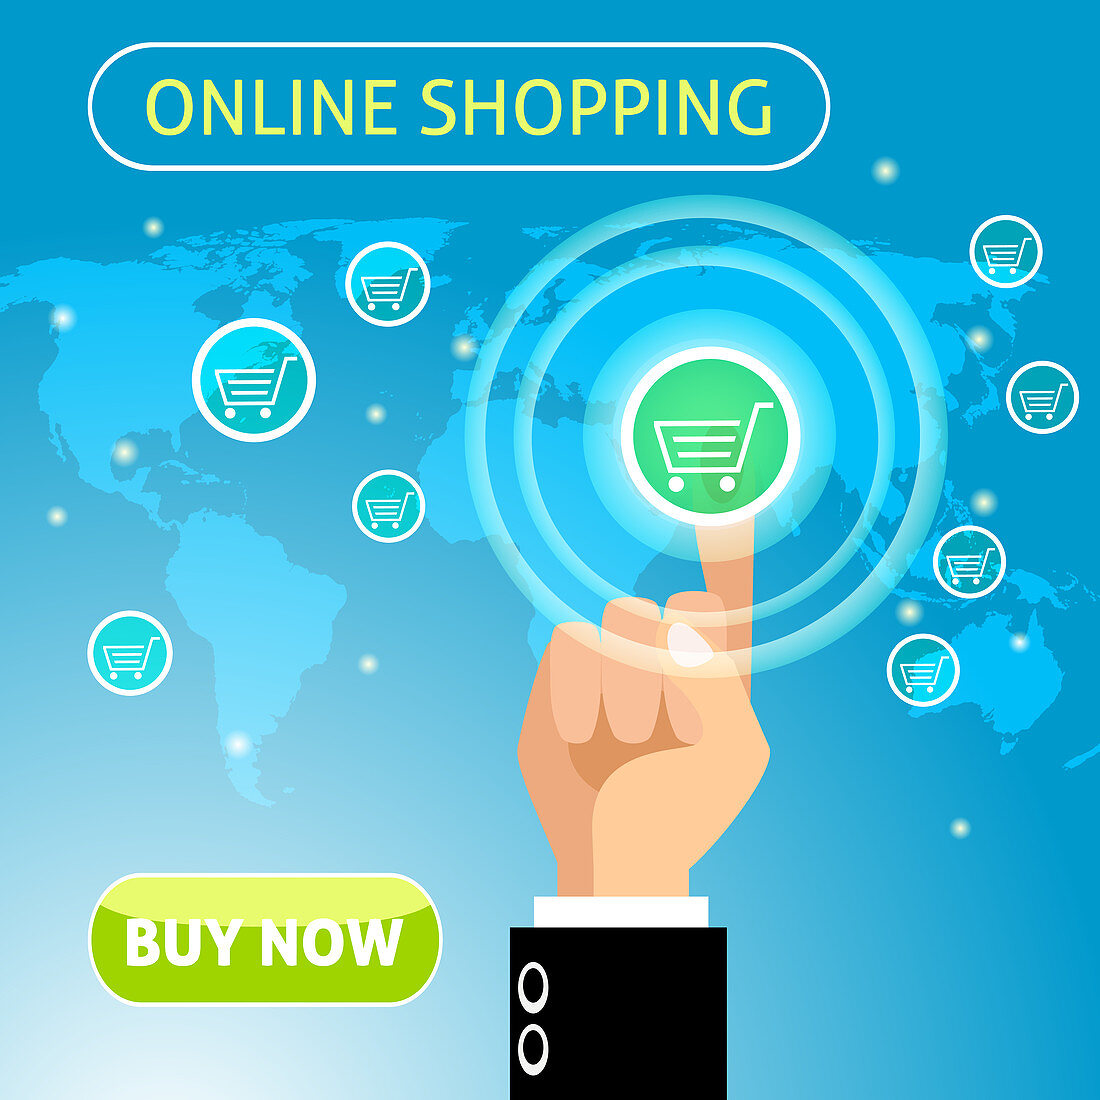 Online shopping, illustration